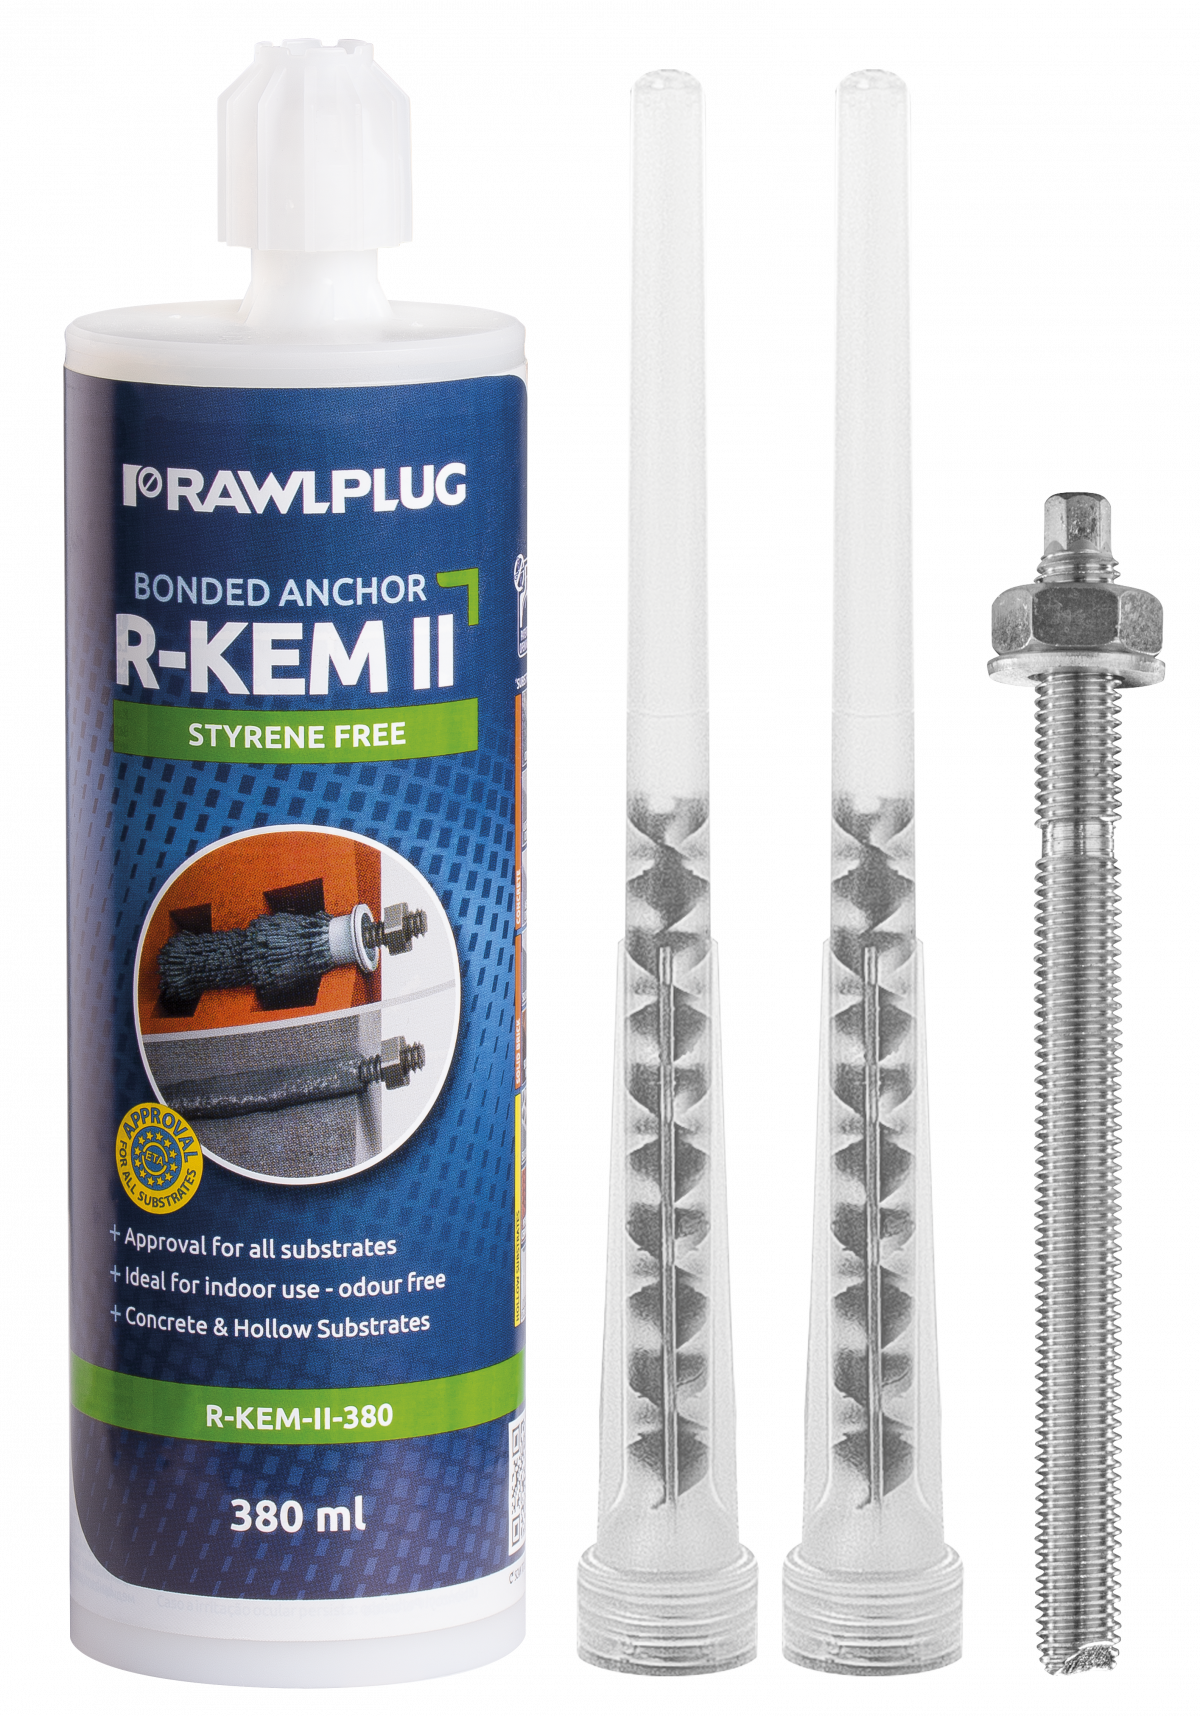 R-KEM II kotva chemická polyesterová bez styrenu do betonu